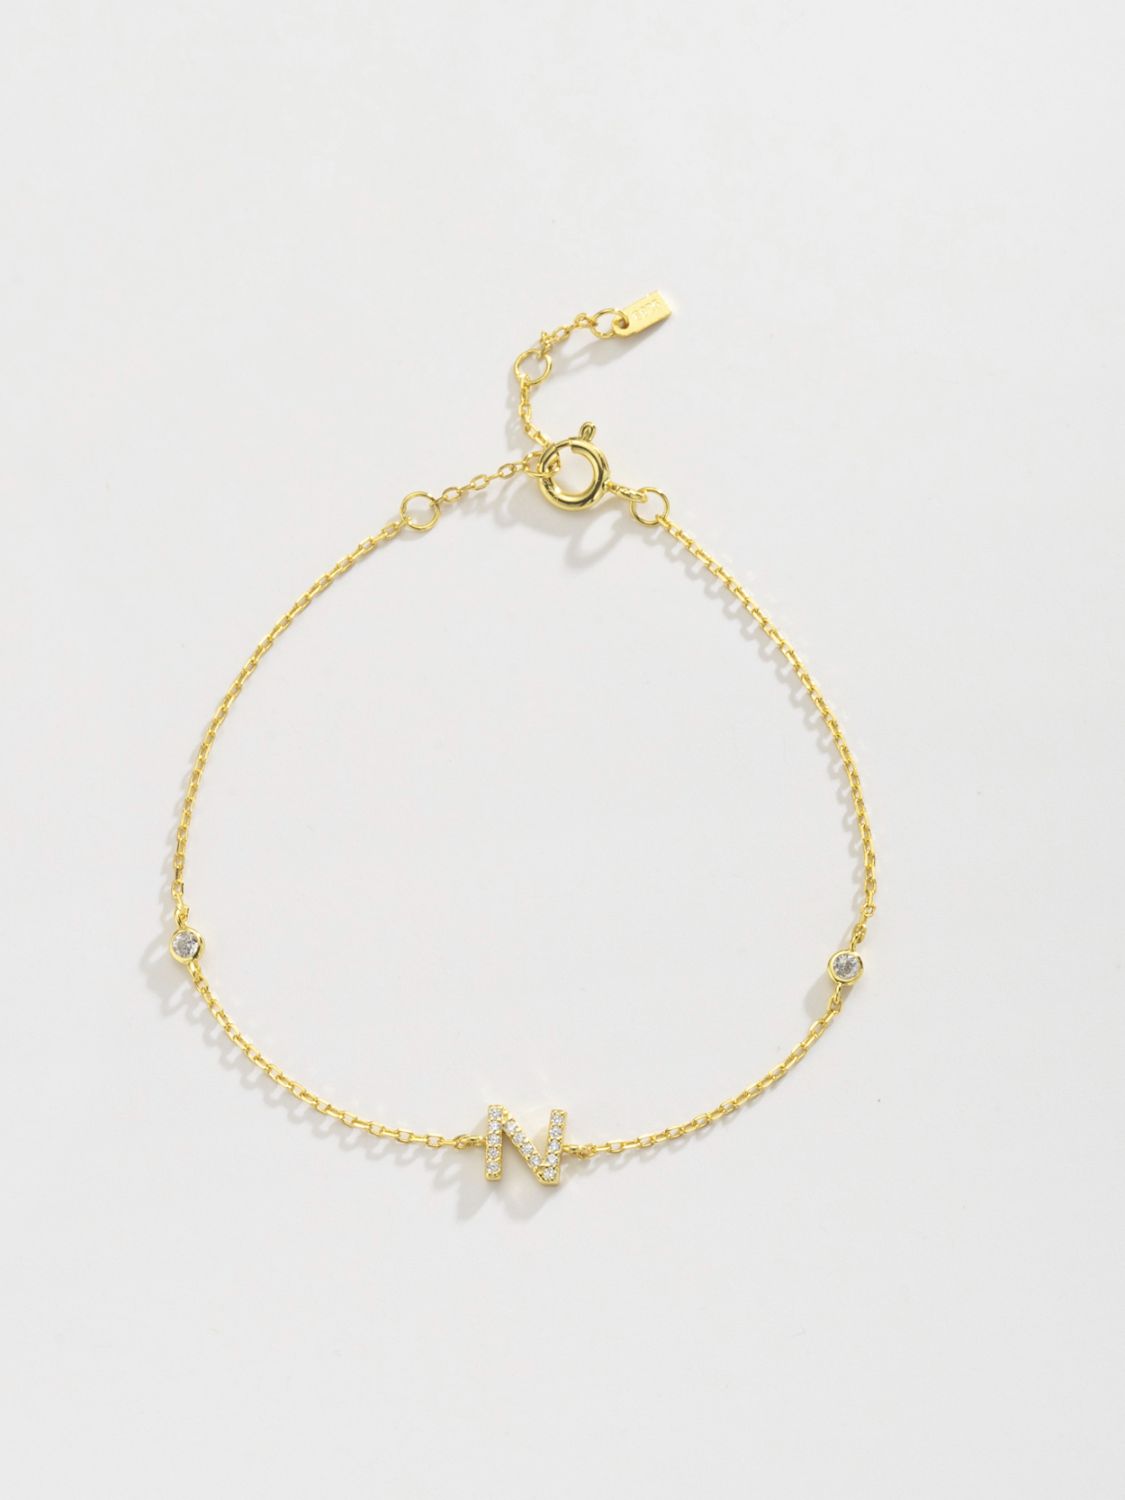 L To P Zircon 925 Sterling Silver Bracelet - Women’s Jewelry - Bracelets - 15 - 2024